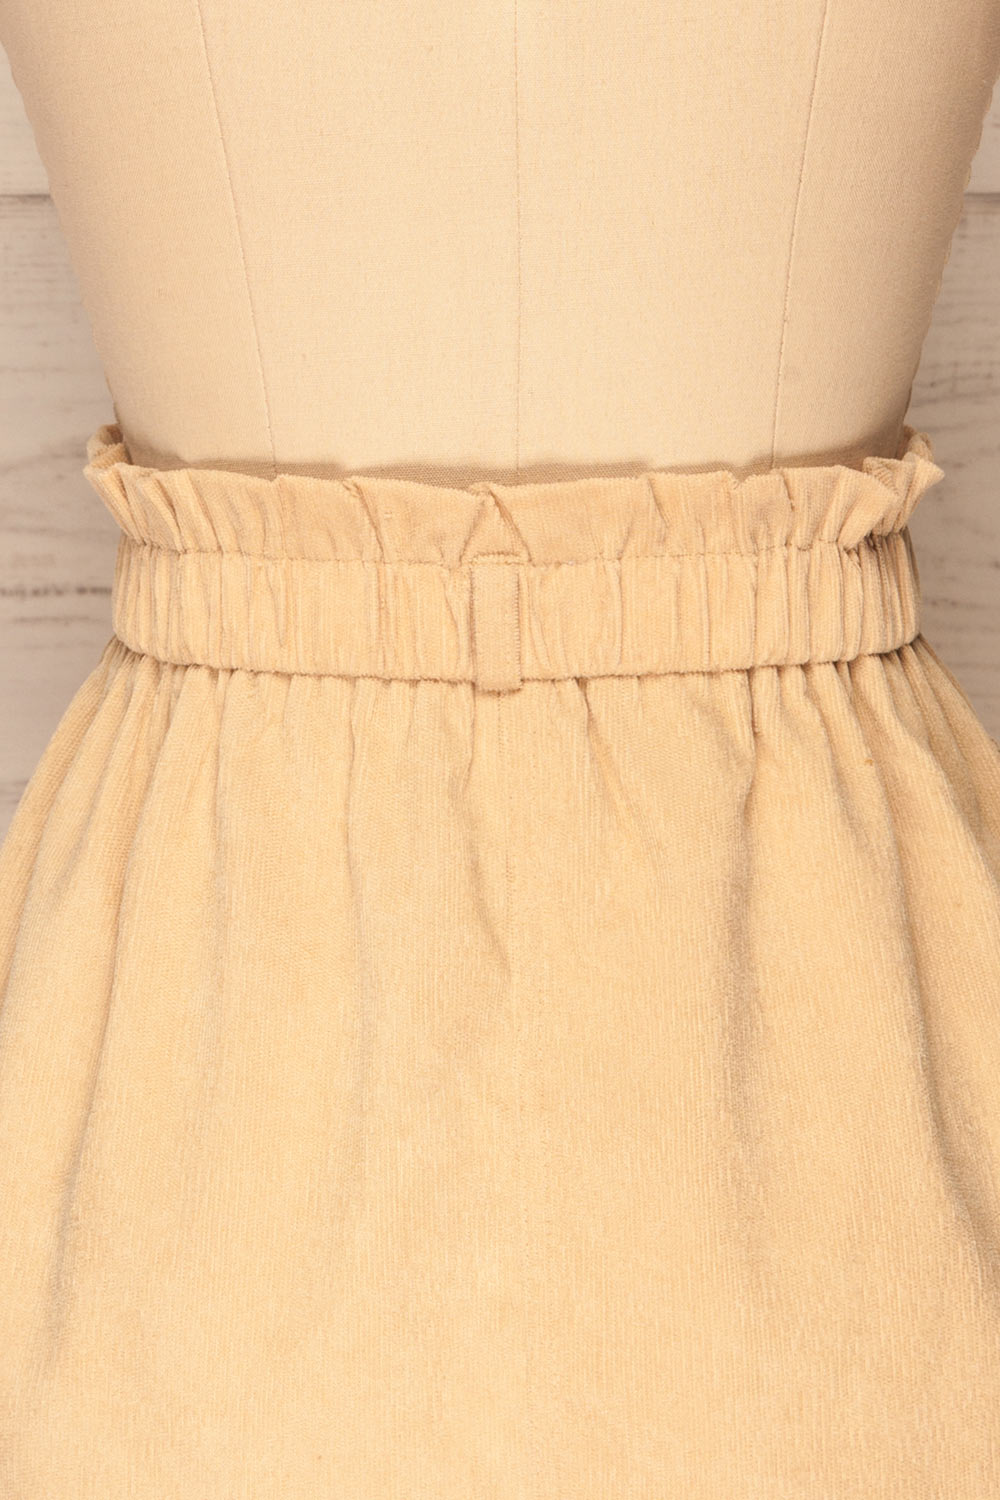 Loxley Beige Corduroy Mini Skirt | La Petite Garçonne back close-up